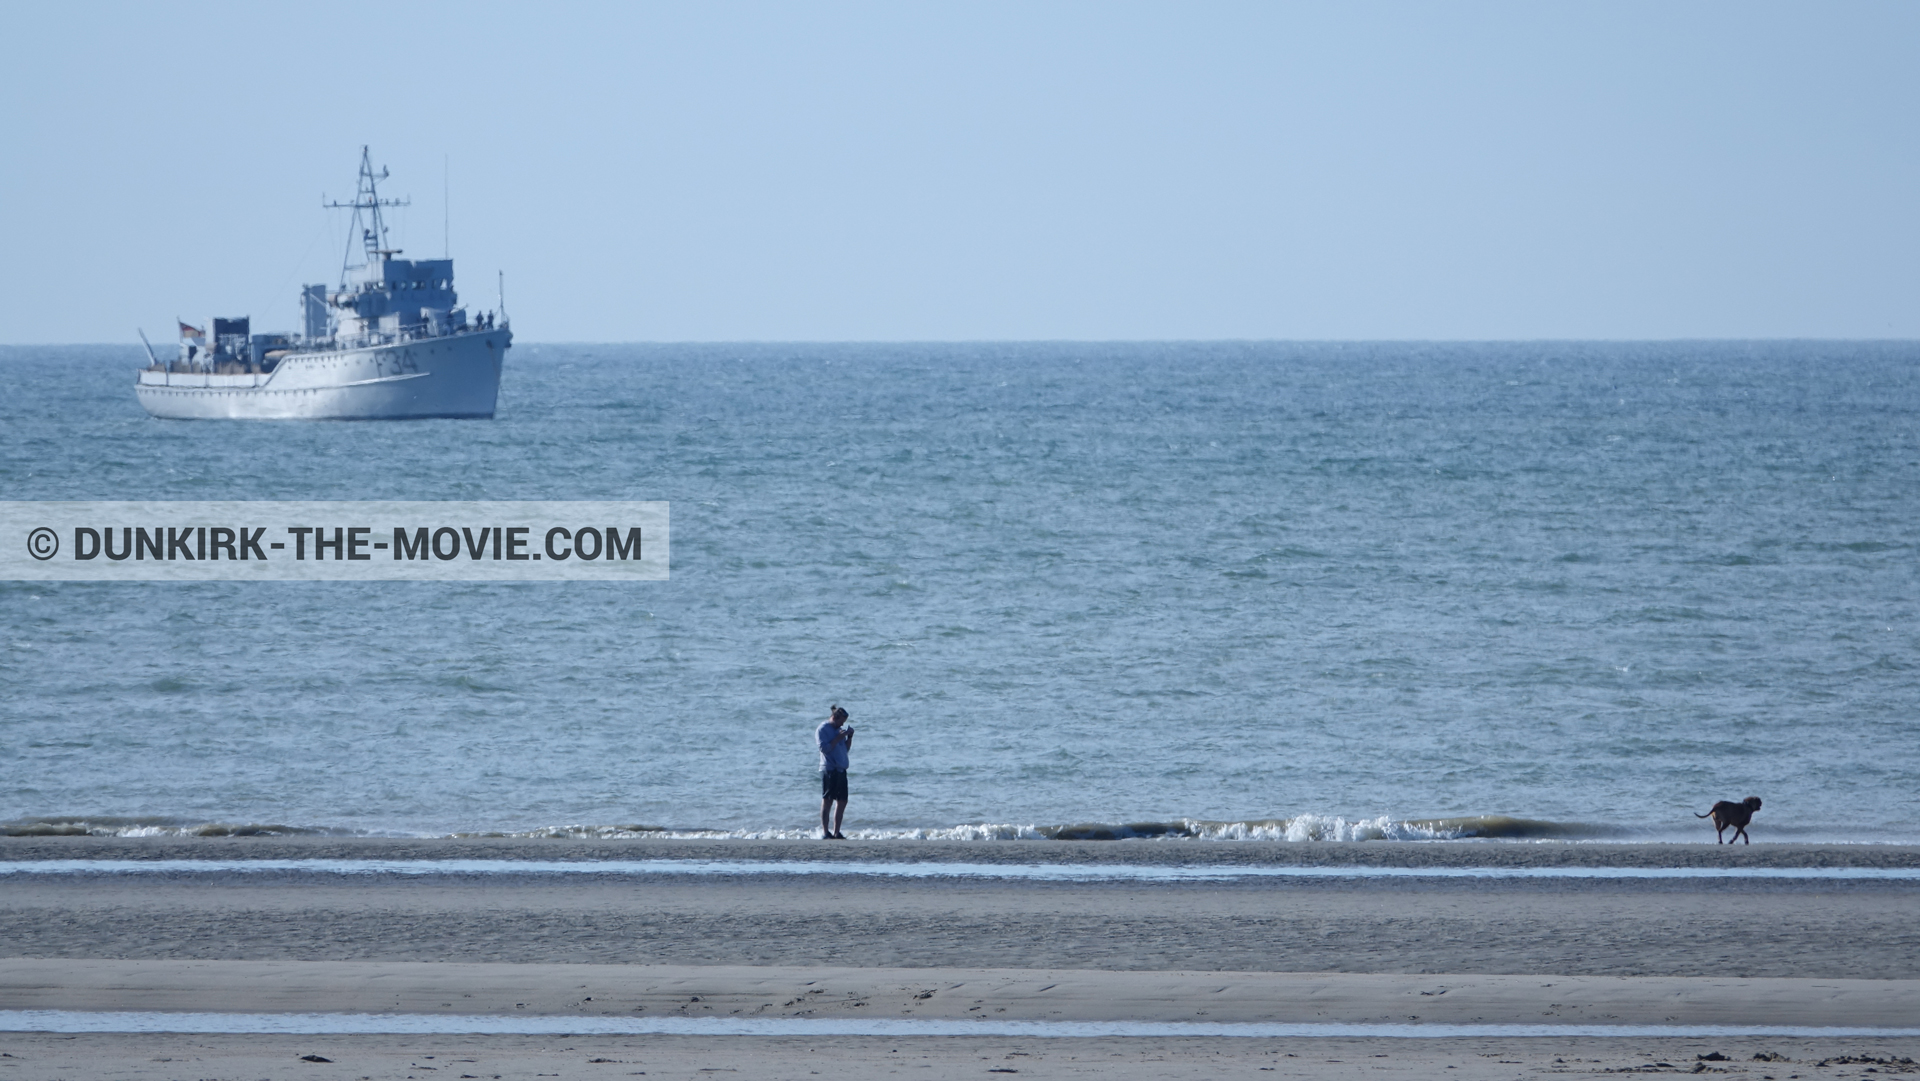 Fotos con cielo azul, F34 - Hr.Ms. Sittard, playa,  durante el rodaje de la película Dunkerque de Nolan